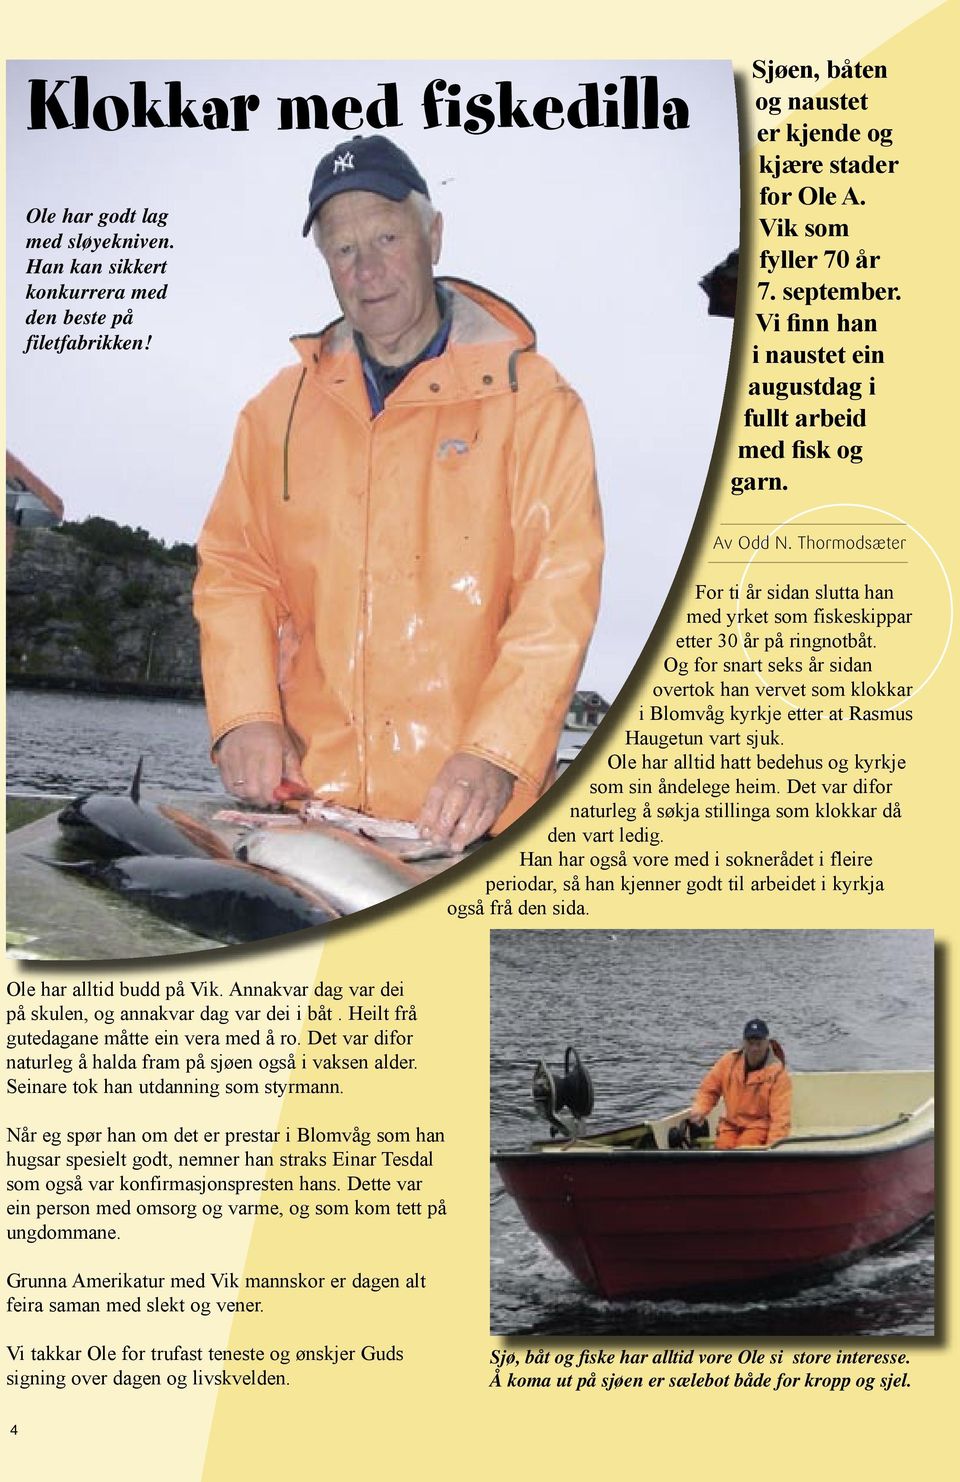 Thormodsæter For ti år sidan slutta han med yrket som fiskeskippar etter 30 år på ringnotbåt.